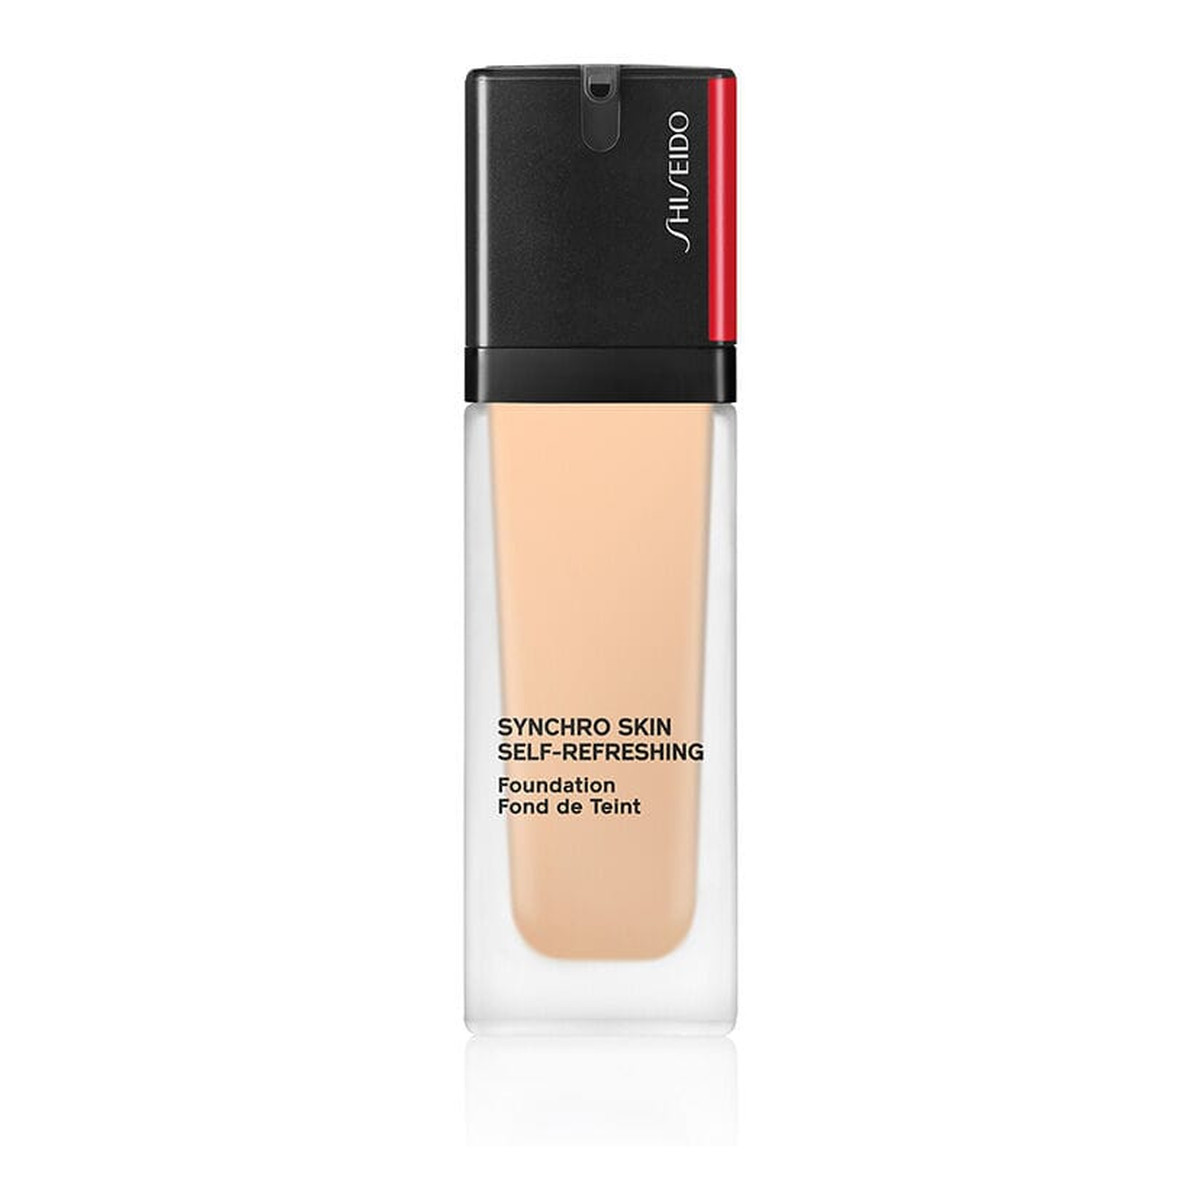 Shiseido Synchro Skin Self-Refreshing Foundation SPF30 długotrwały podkład do twarzy 30ml